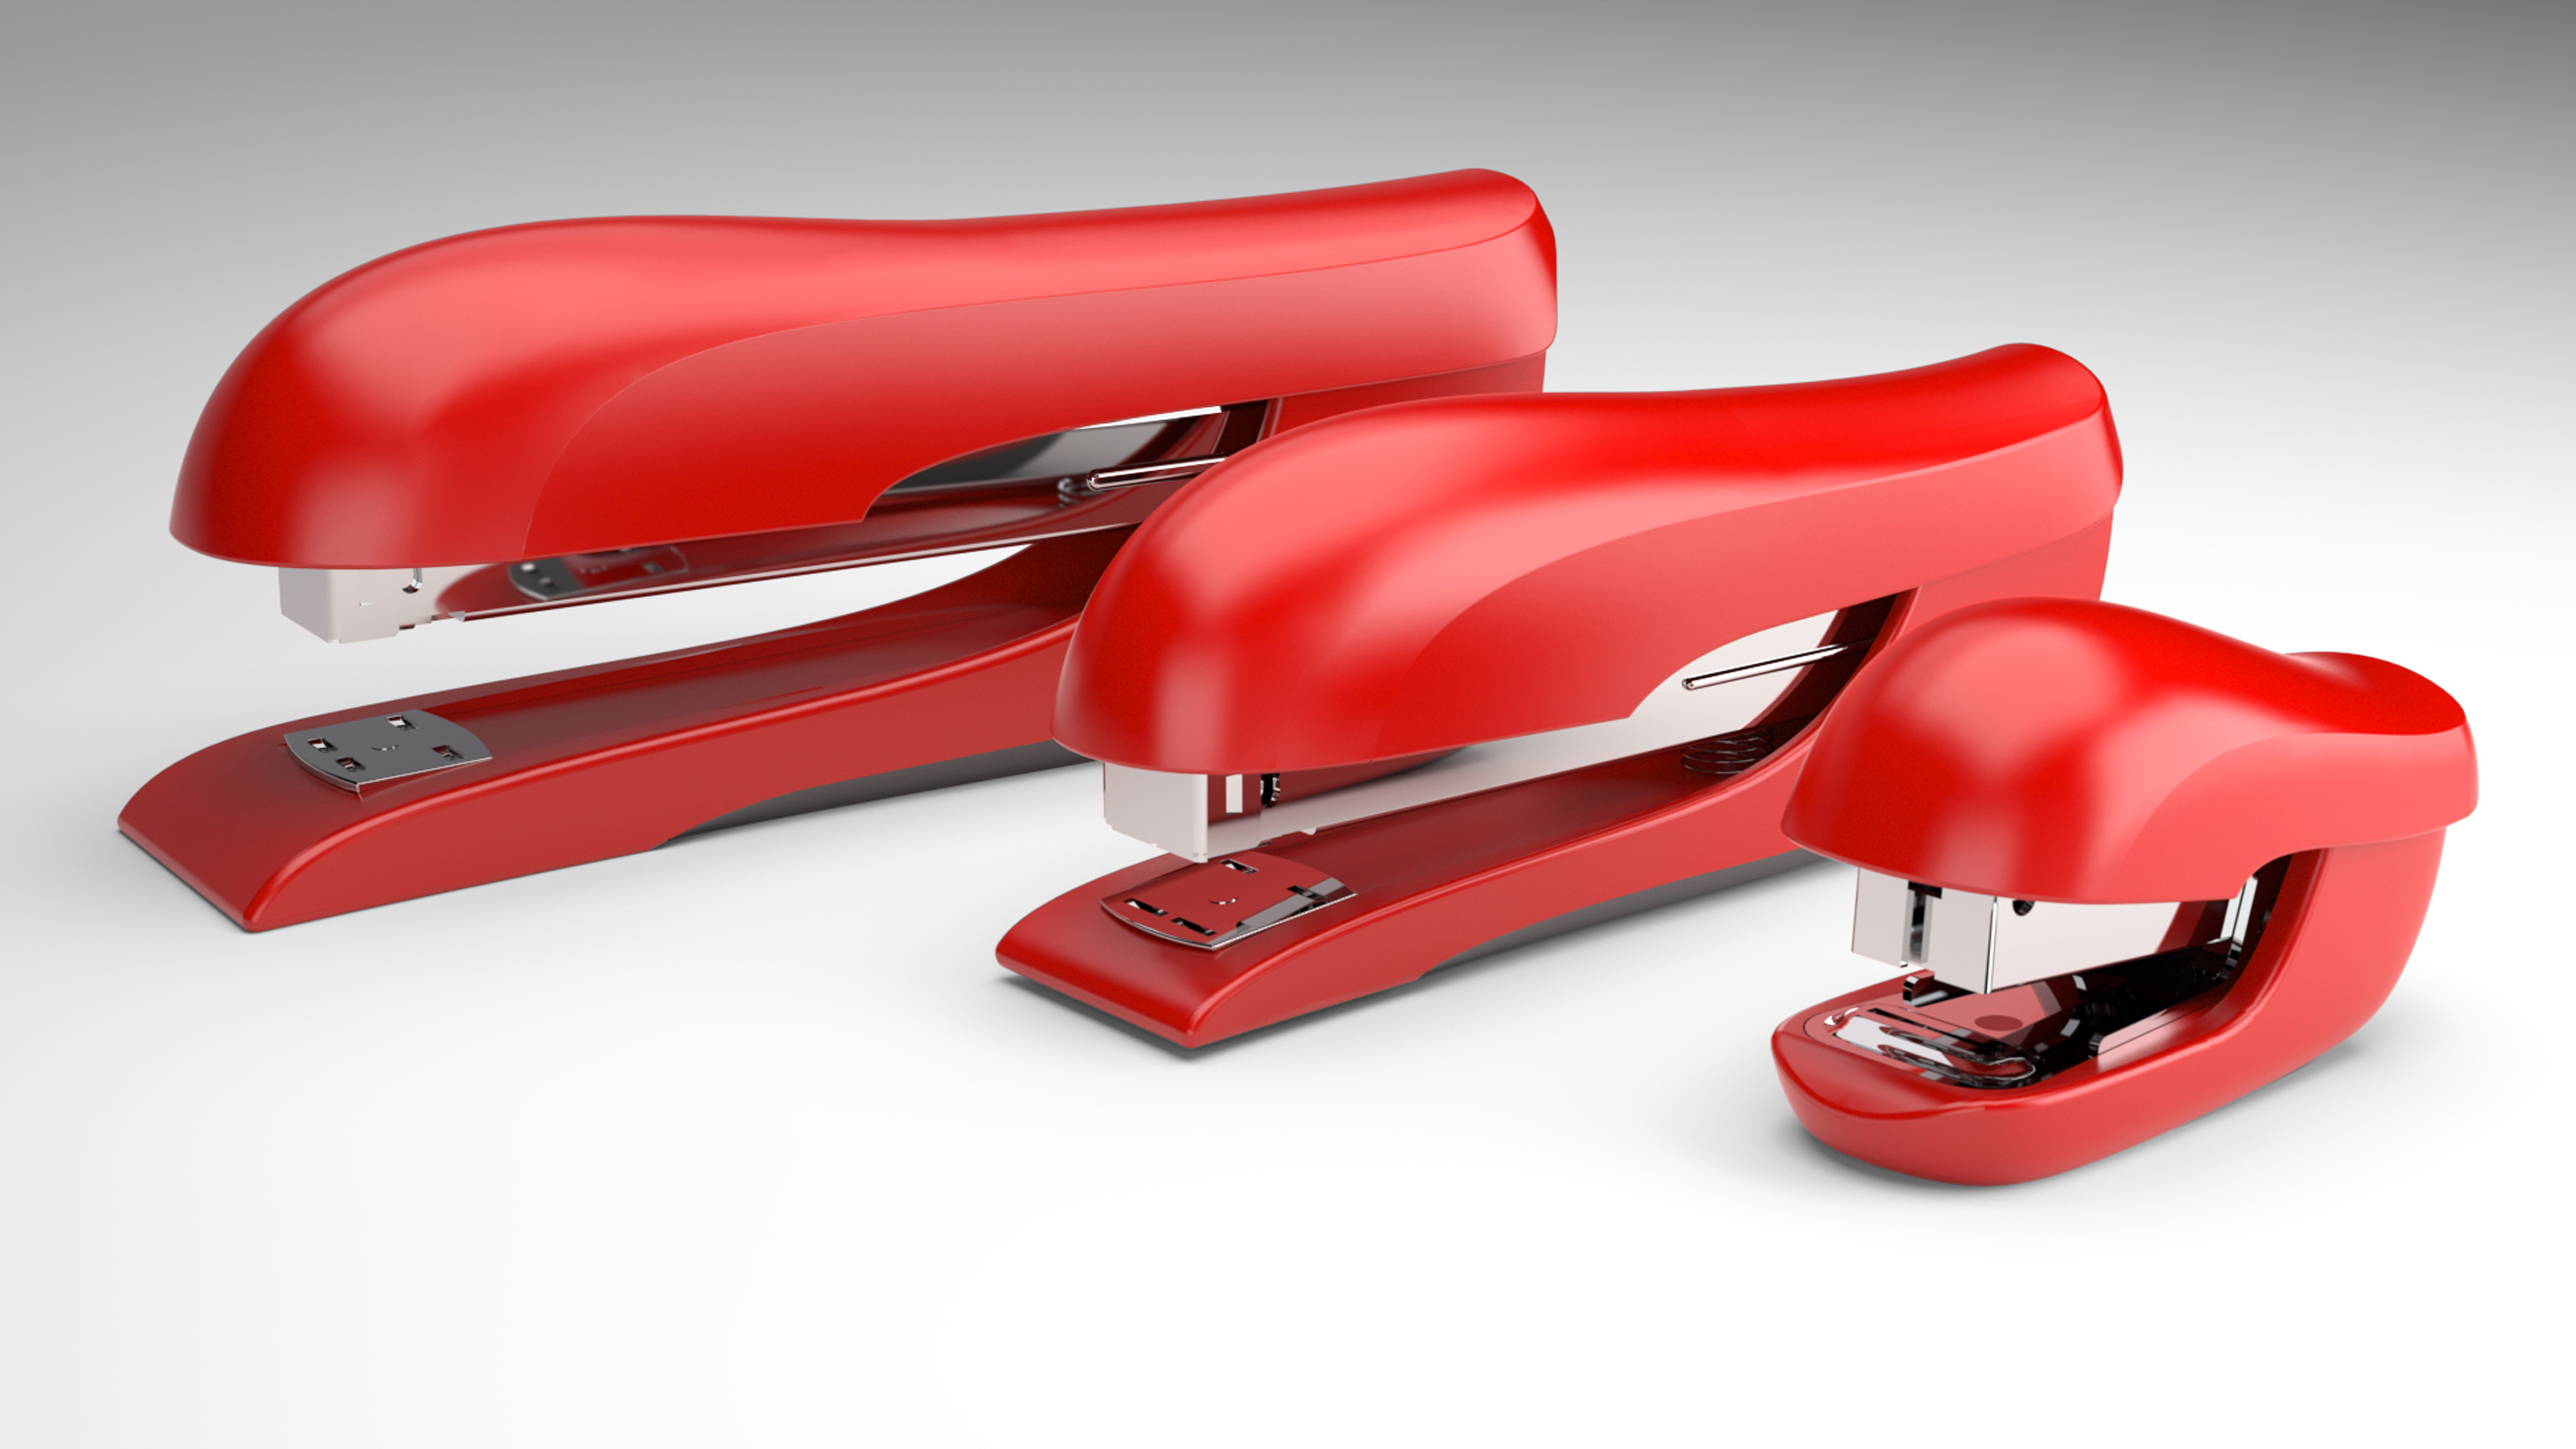 x acto stapler consumer product design 24